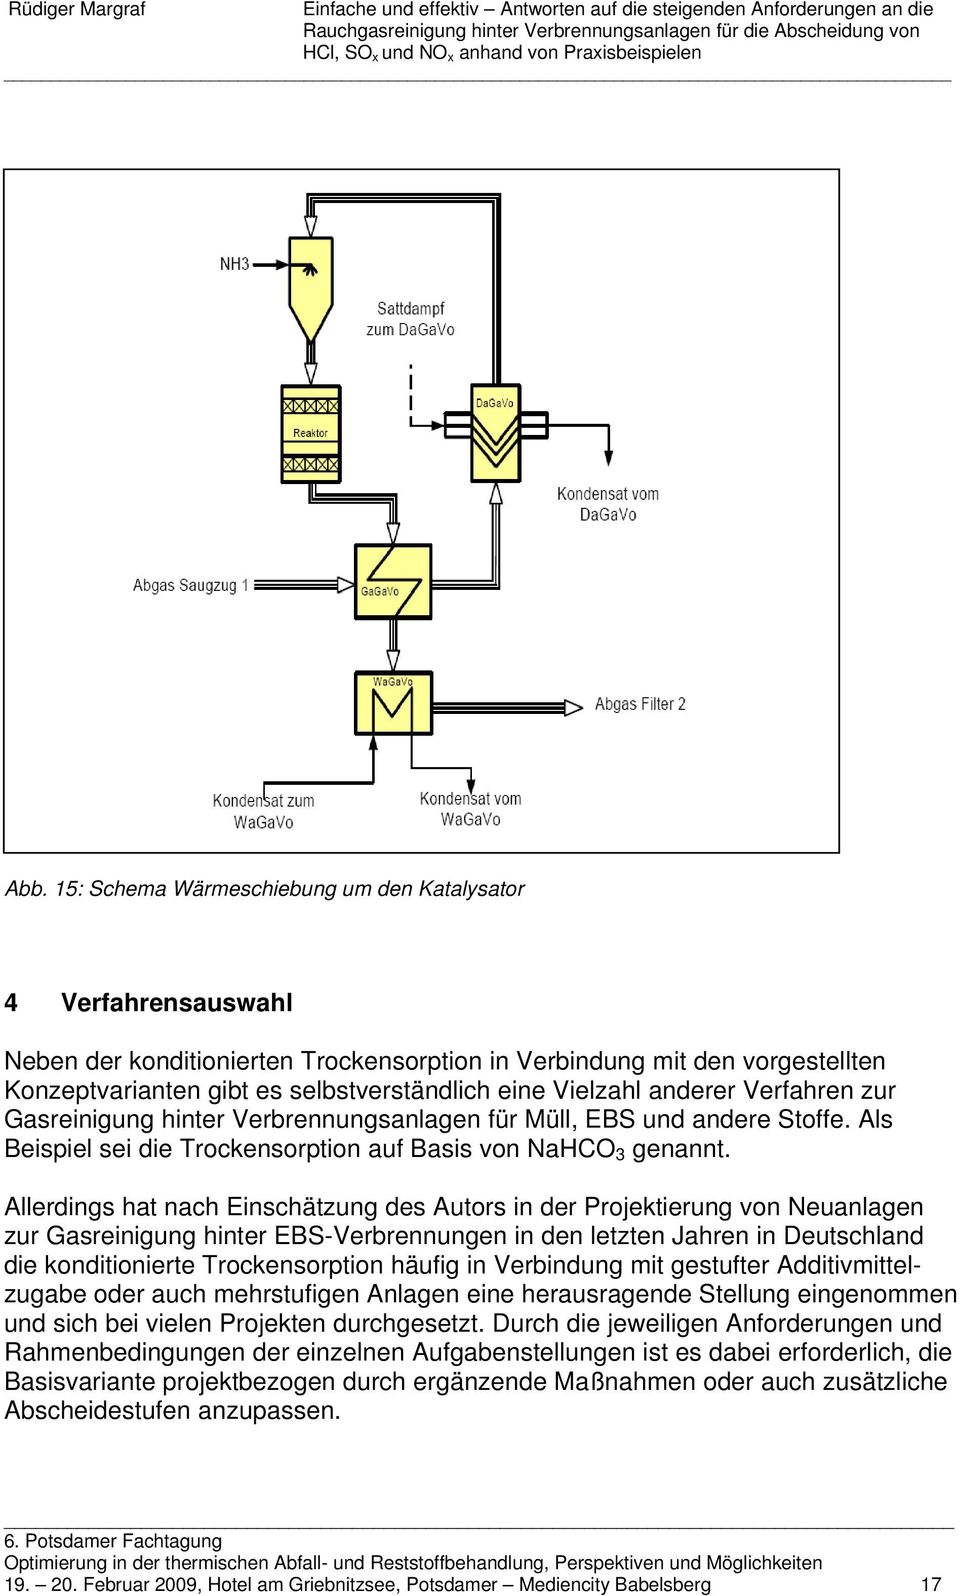 Allerdings hat nach Einschätzung des Autors in der Projektierung von Neuanlagen zur Gasreinigung hinter EBS-Verbrennungen in den letzten Jahren in Deutschland die konditionierte Trockensorption